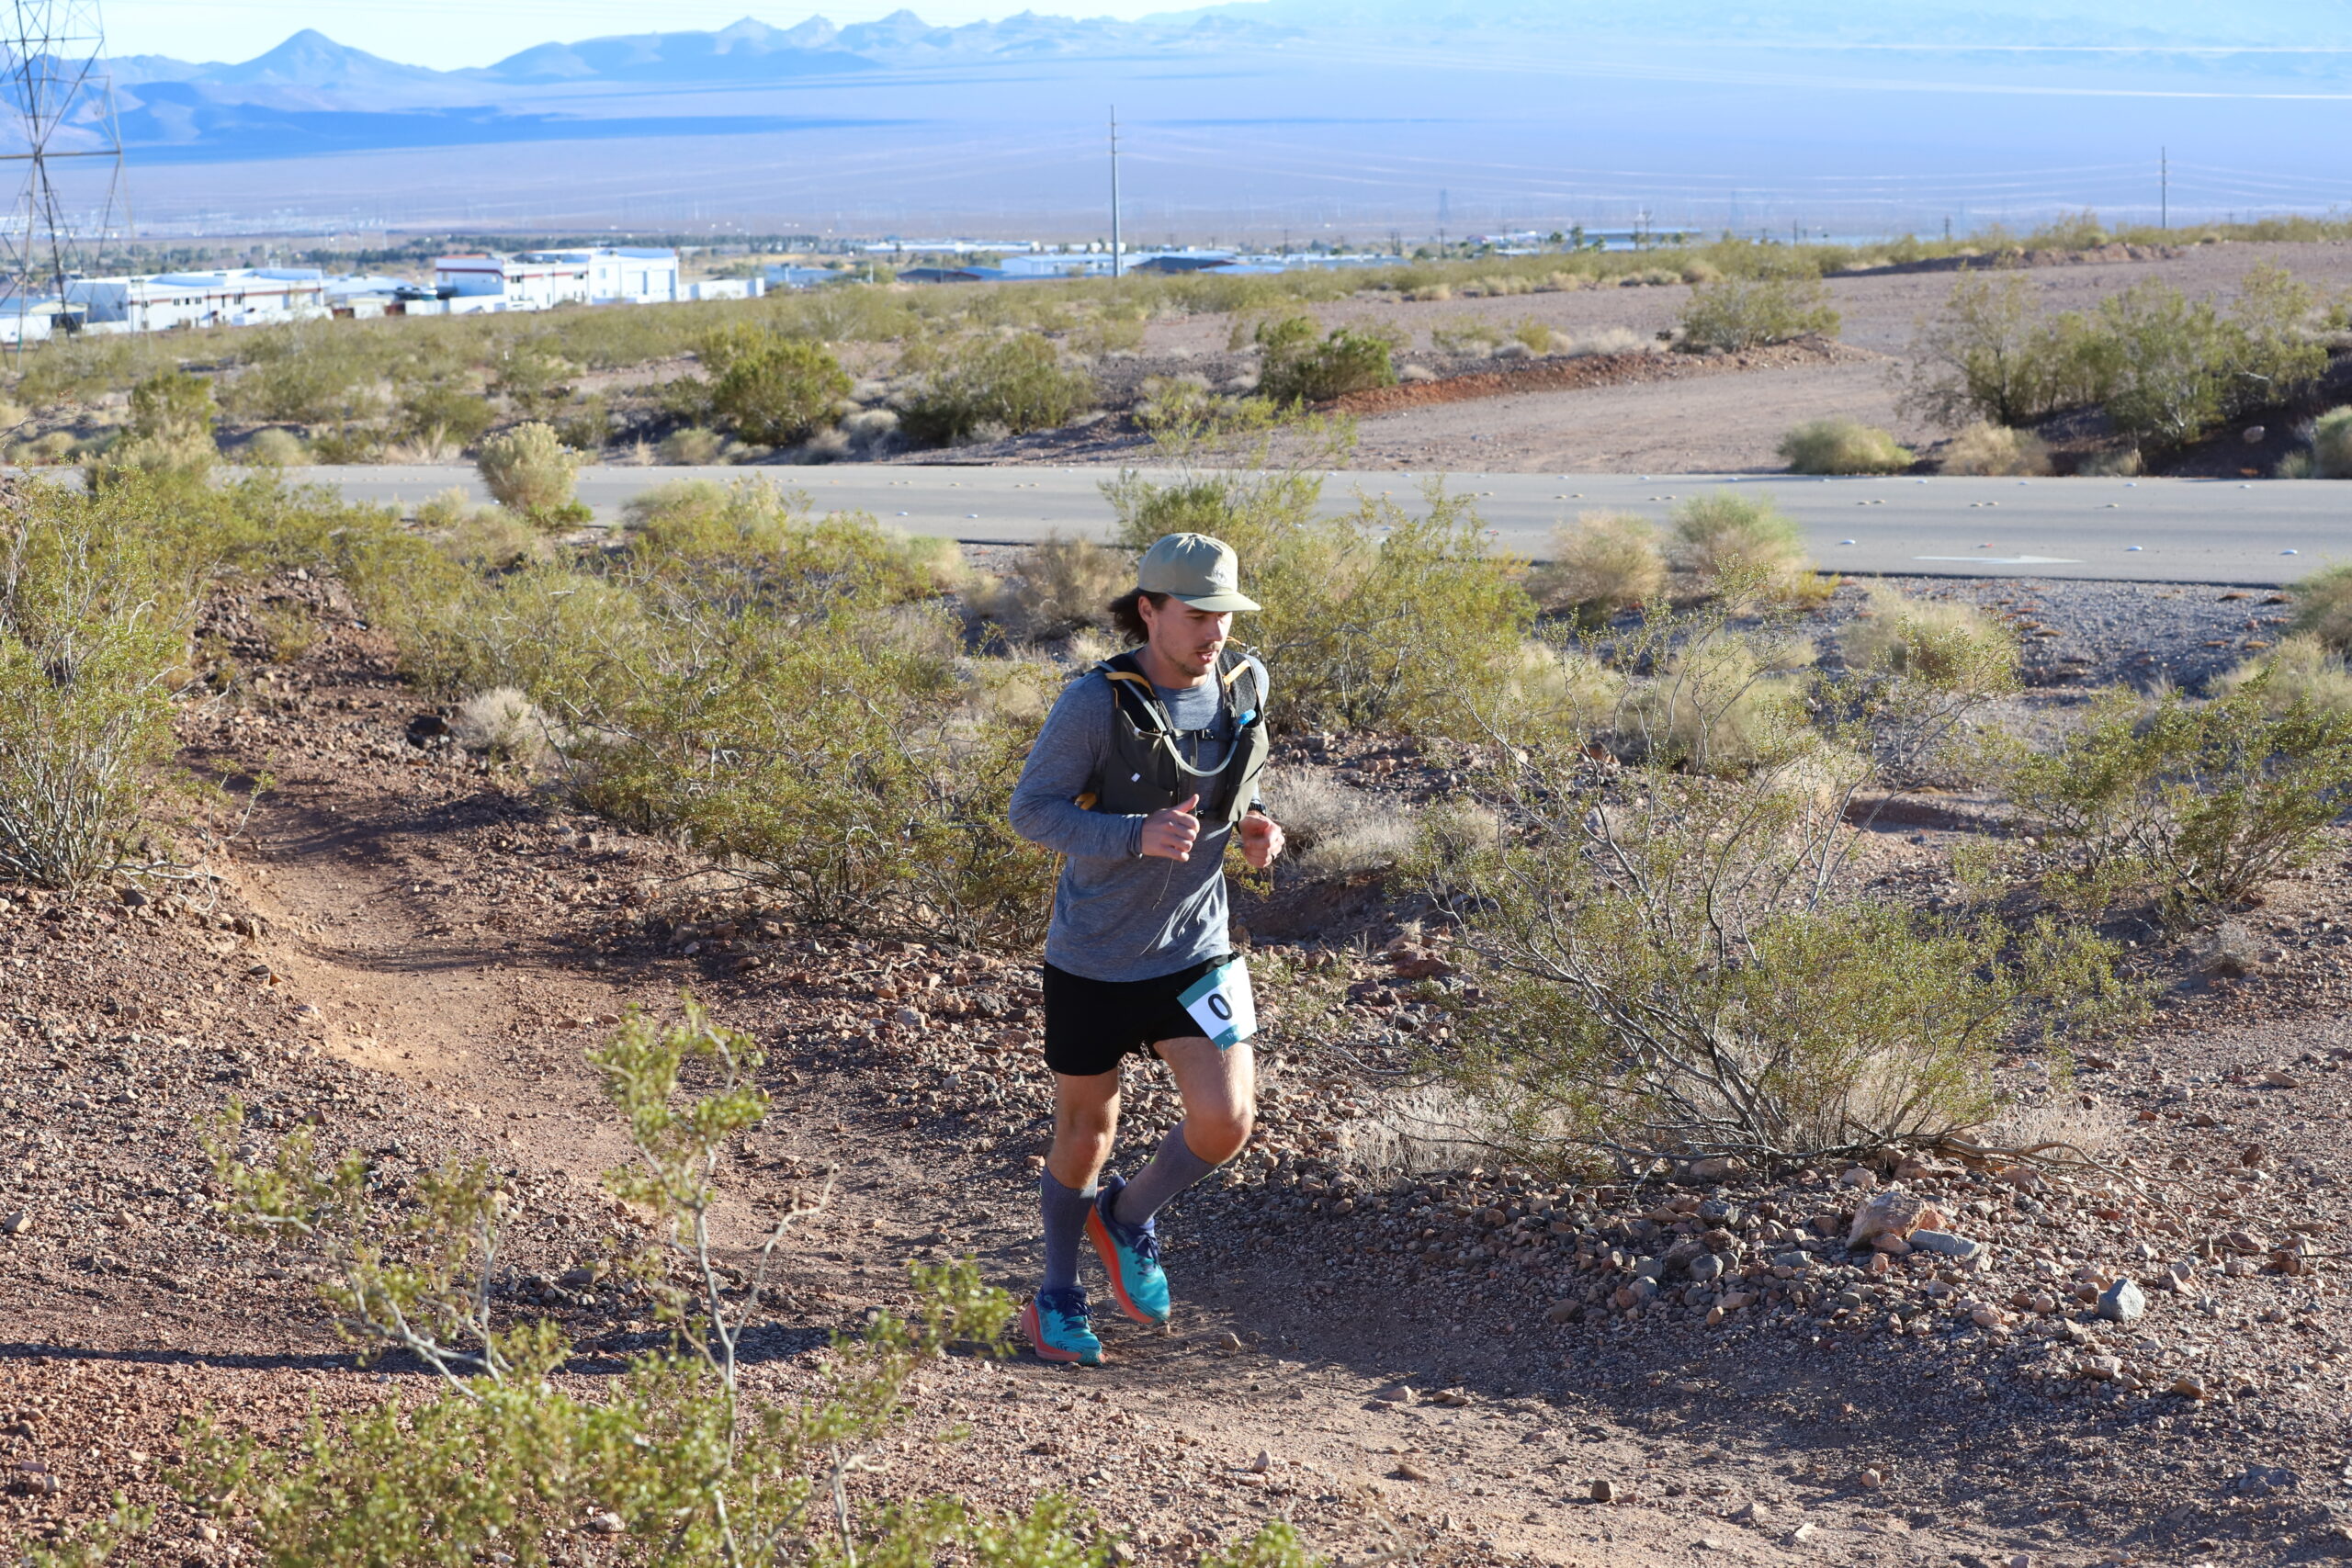 Trail runner running the bootleg boogie ultra marathon in the mojave desert, nevada.